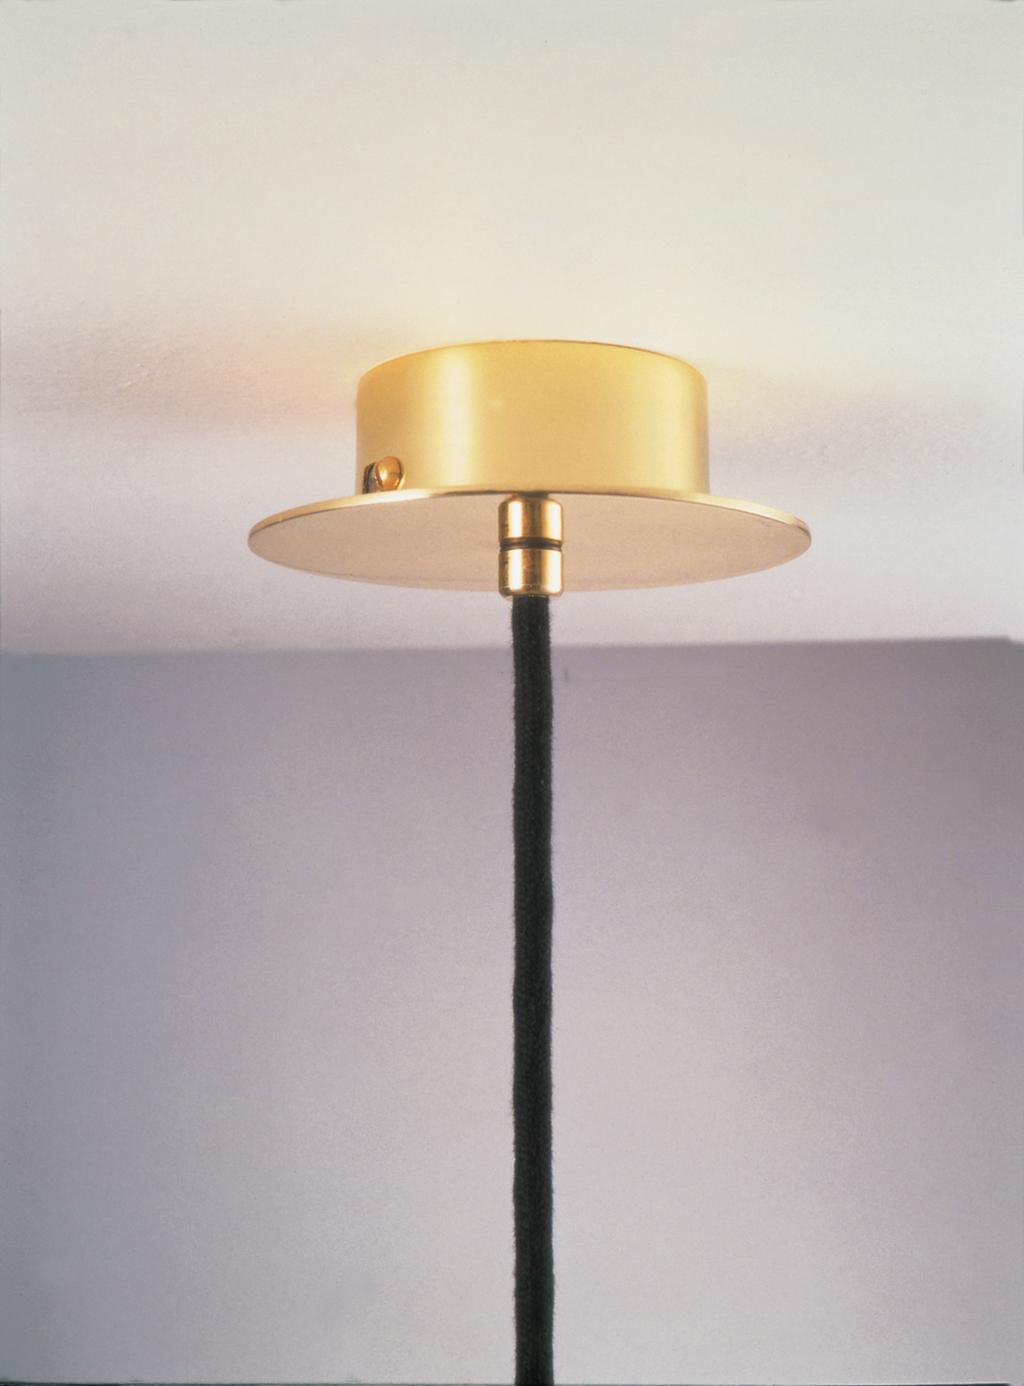 FLORONES DESCRIPCIÓN GENERAL: Los florones ofrecen una solución sencilla y versátil al problema de conexión de las lámparas de suspensión con el cableado del techo, creando, con una estructura